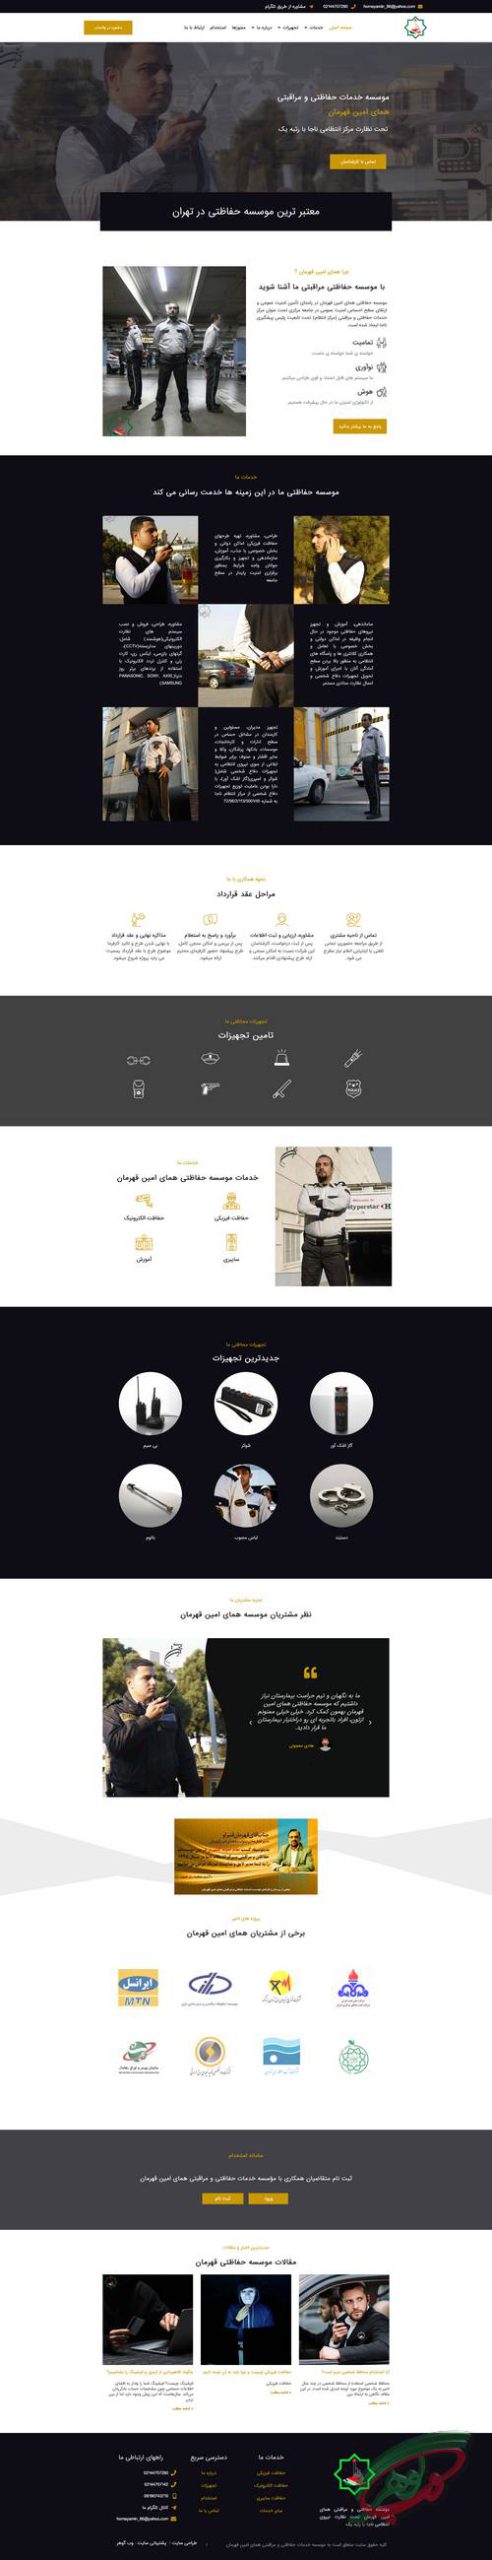 همای امین قهرمان از نمونه طراحی سایت شرکتی وب گوهر